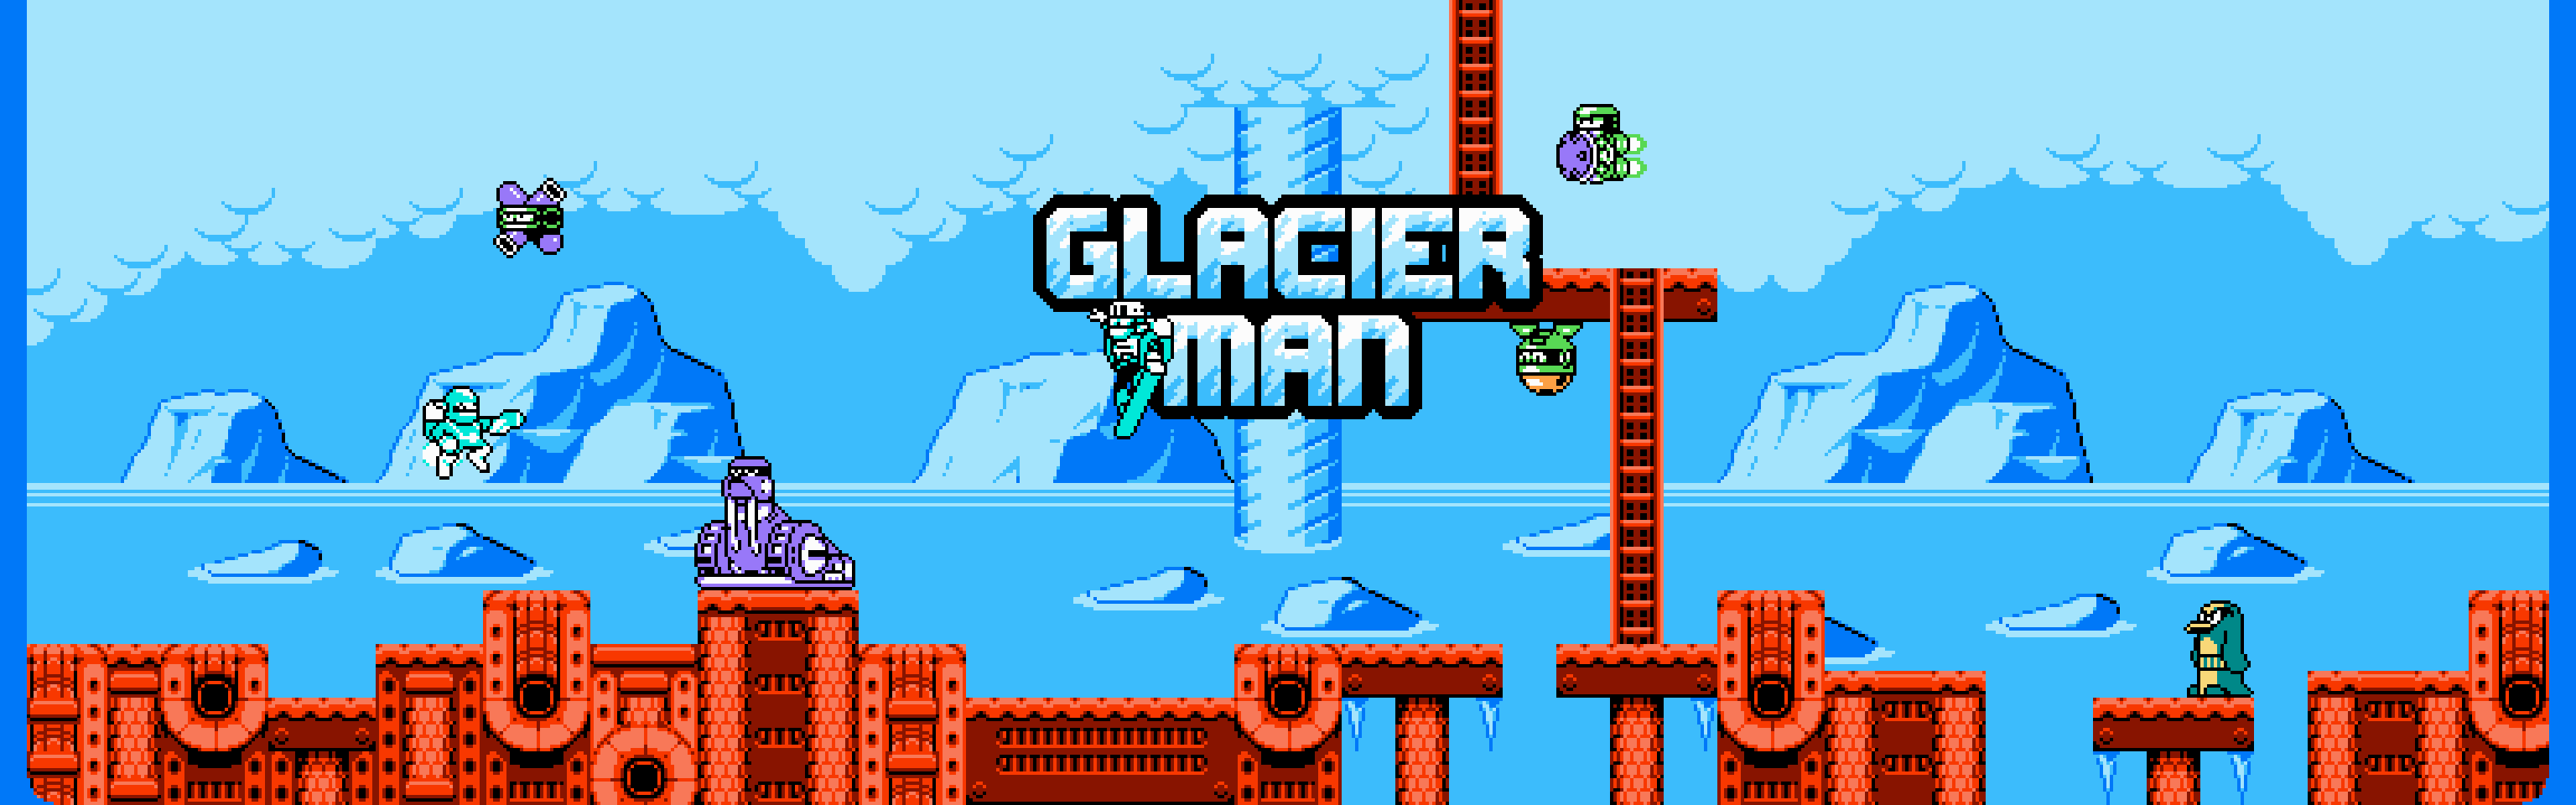 Glacier Man Asset Pack